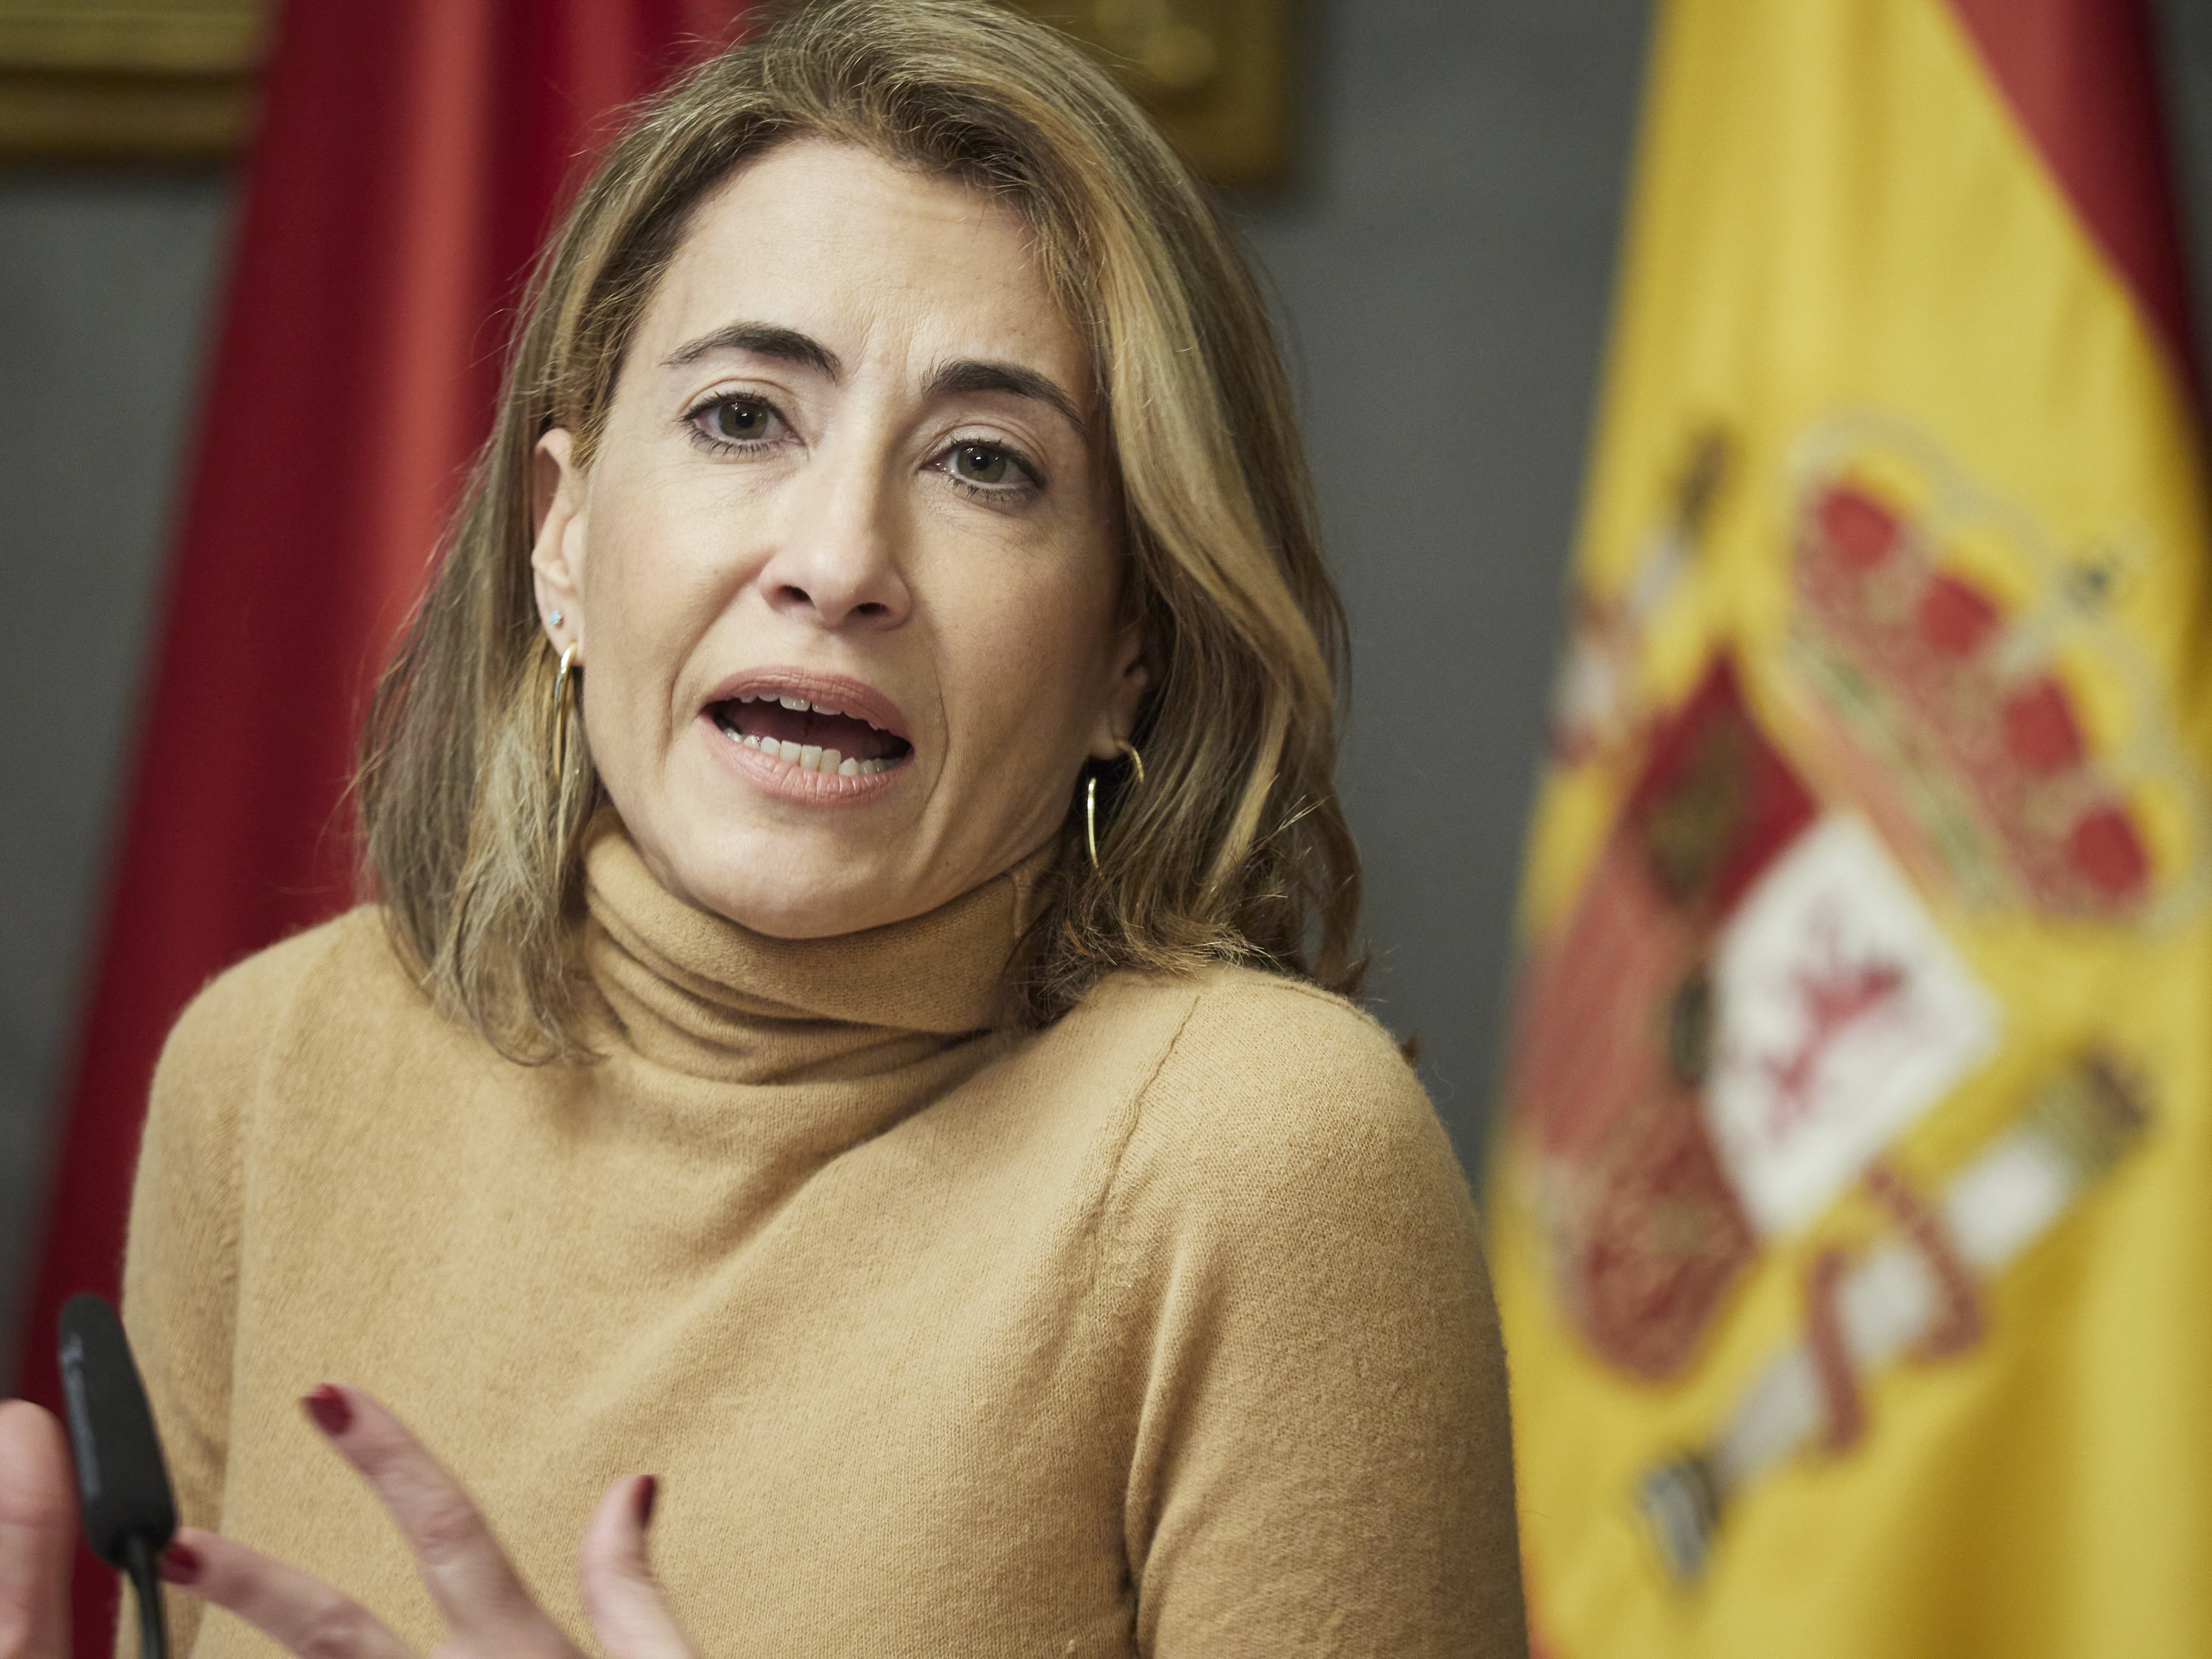 Presupuestos Generalitat: La ministra Raquel Sánchez reitera su disposición a invertir en la B-40